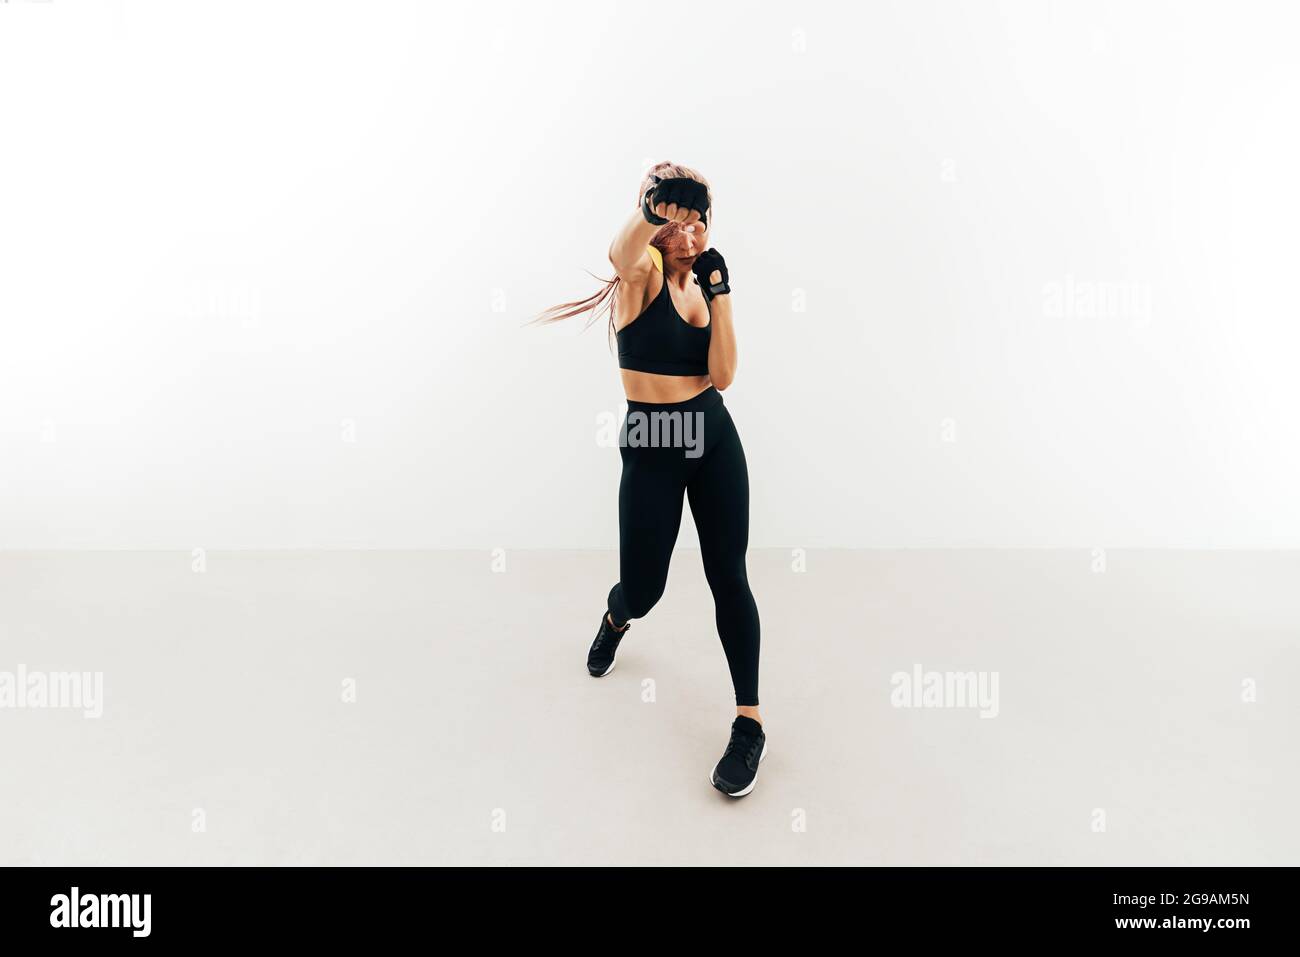 Junge Frau beim Schattenboxen in Innenräumen. Muskulöse Frau in Handschuhen, die gegen eine weiße Wand trainiert. Stockfoto